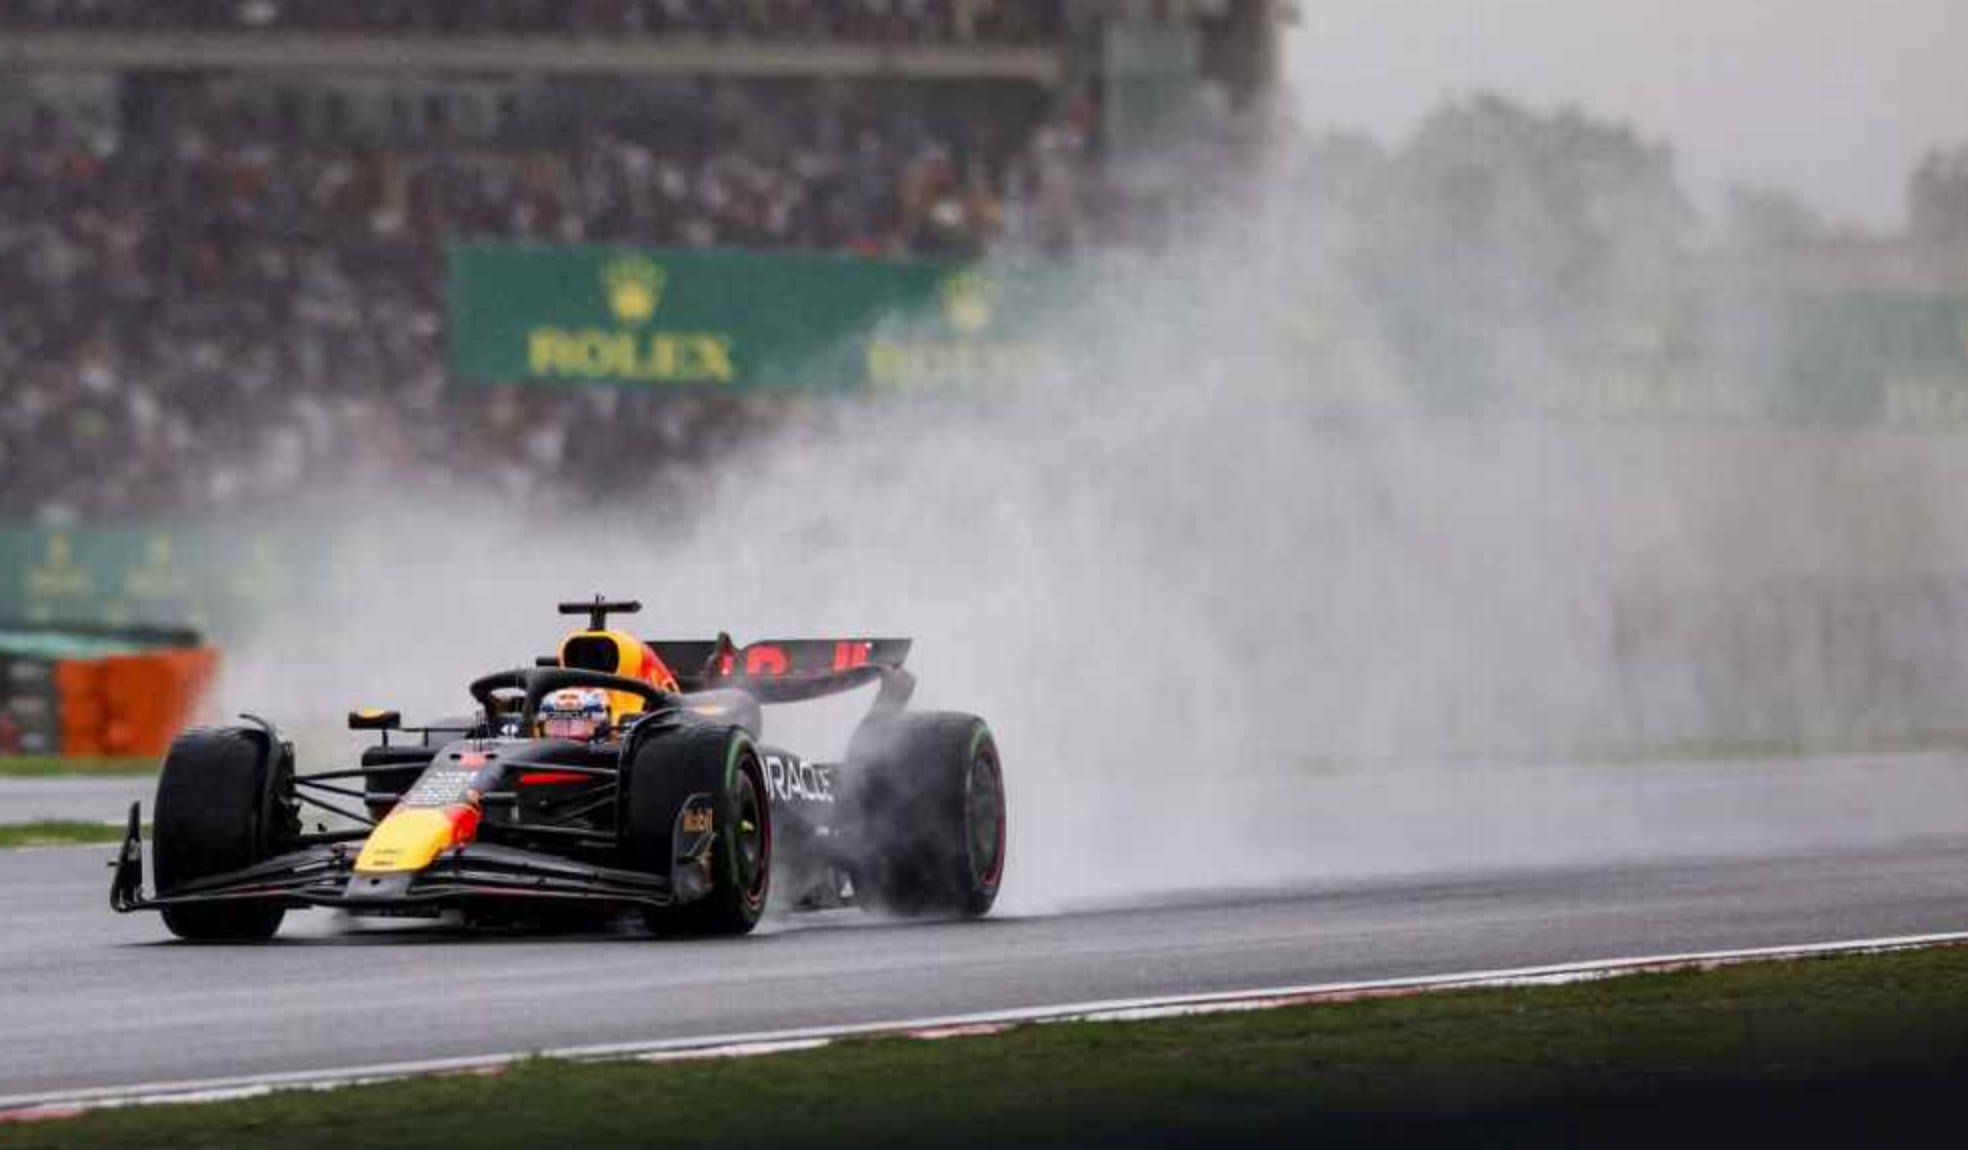 “Fue muy difícil mantener el coche en pista”: Max Verstappen